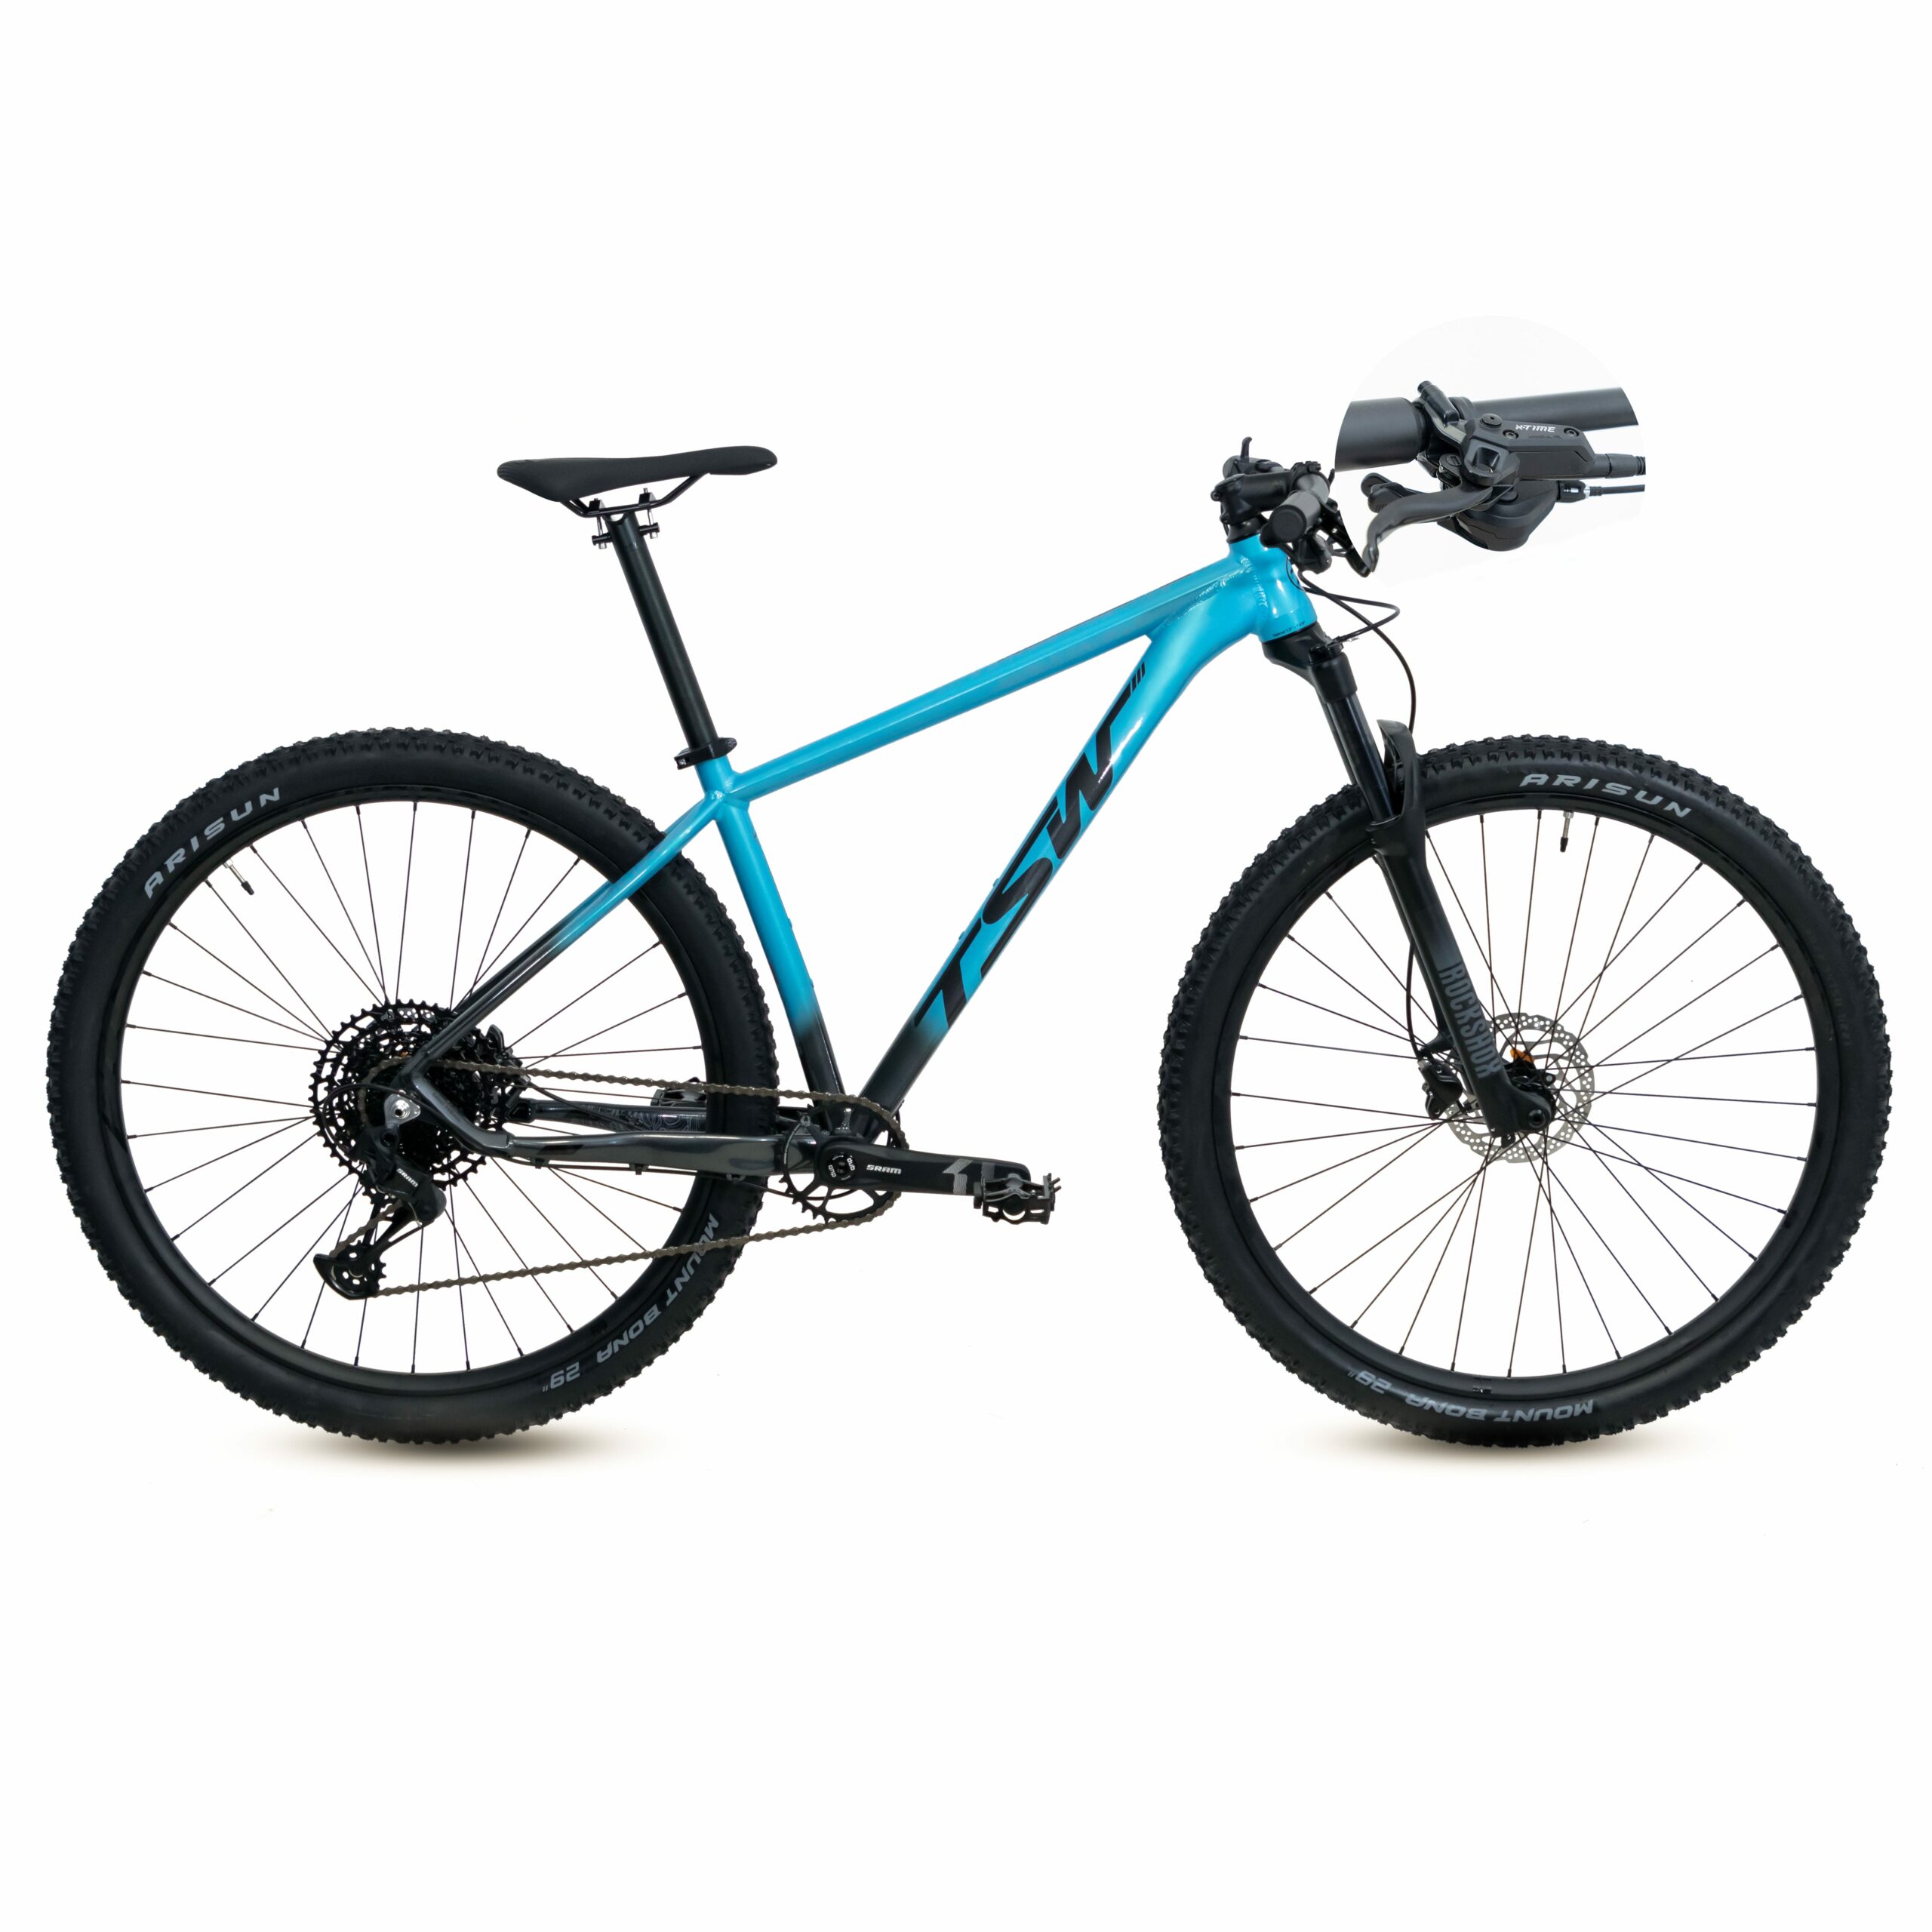 Bicicleta TSW Yukon Freio X-Time | SM-12 | 2021/2022 - 15.5", Azul/Cinza